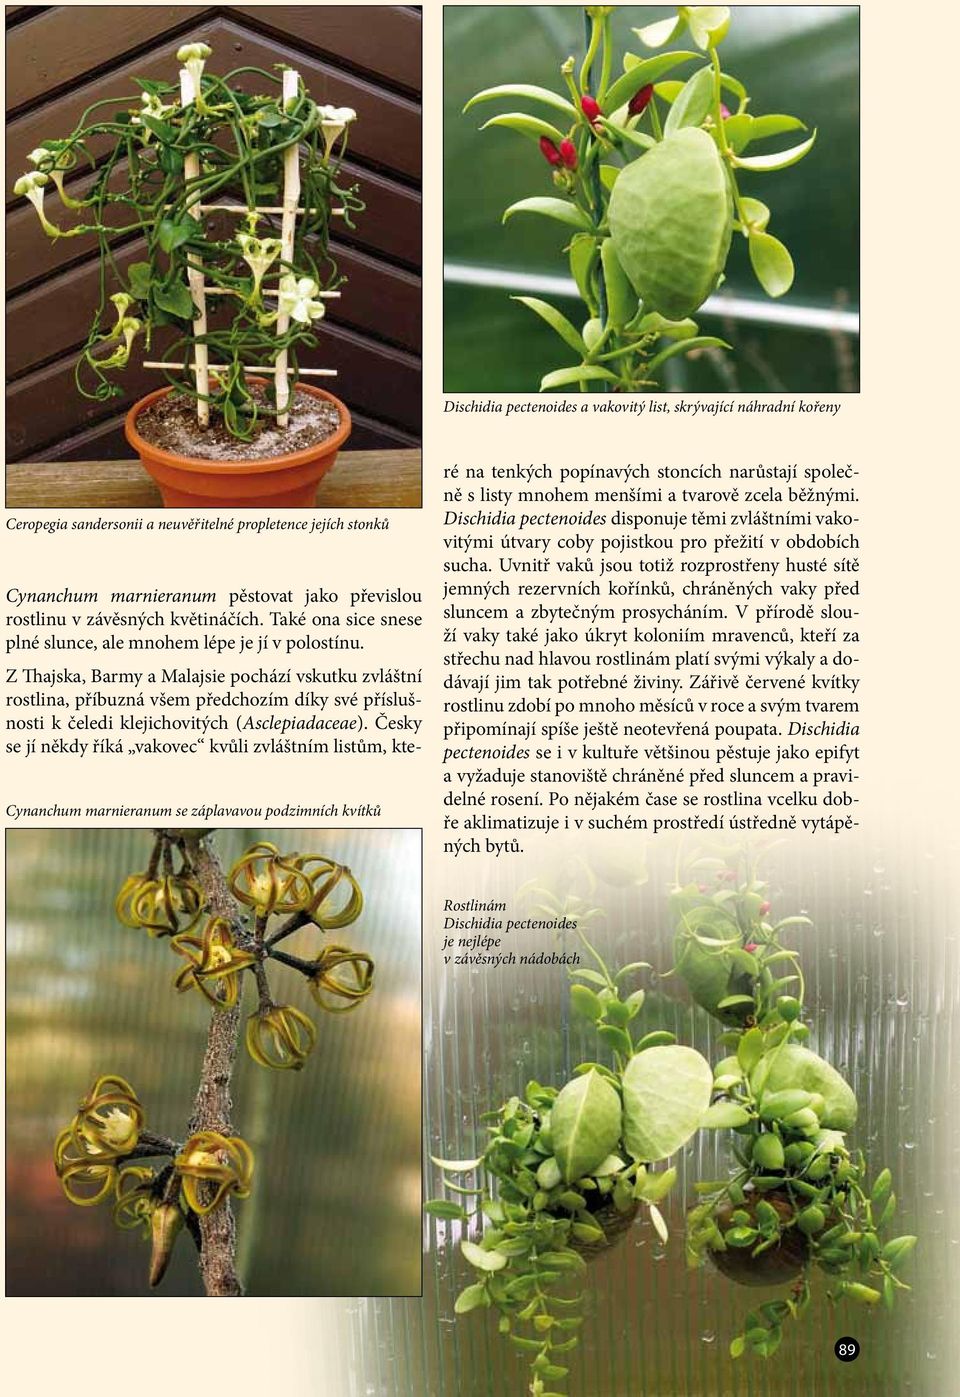 Z Thajska, Barmy a Malajsie pochází vskutku zvláštní rostlina, příbuzná všem předchozím díky své příslušnosti k čeledi klejichovitých (Asclepiadaceae).